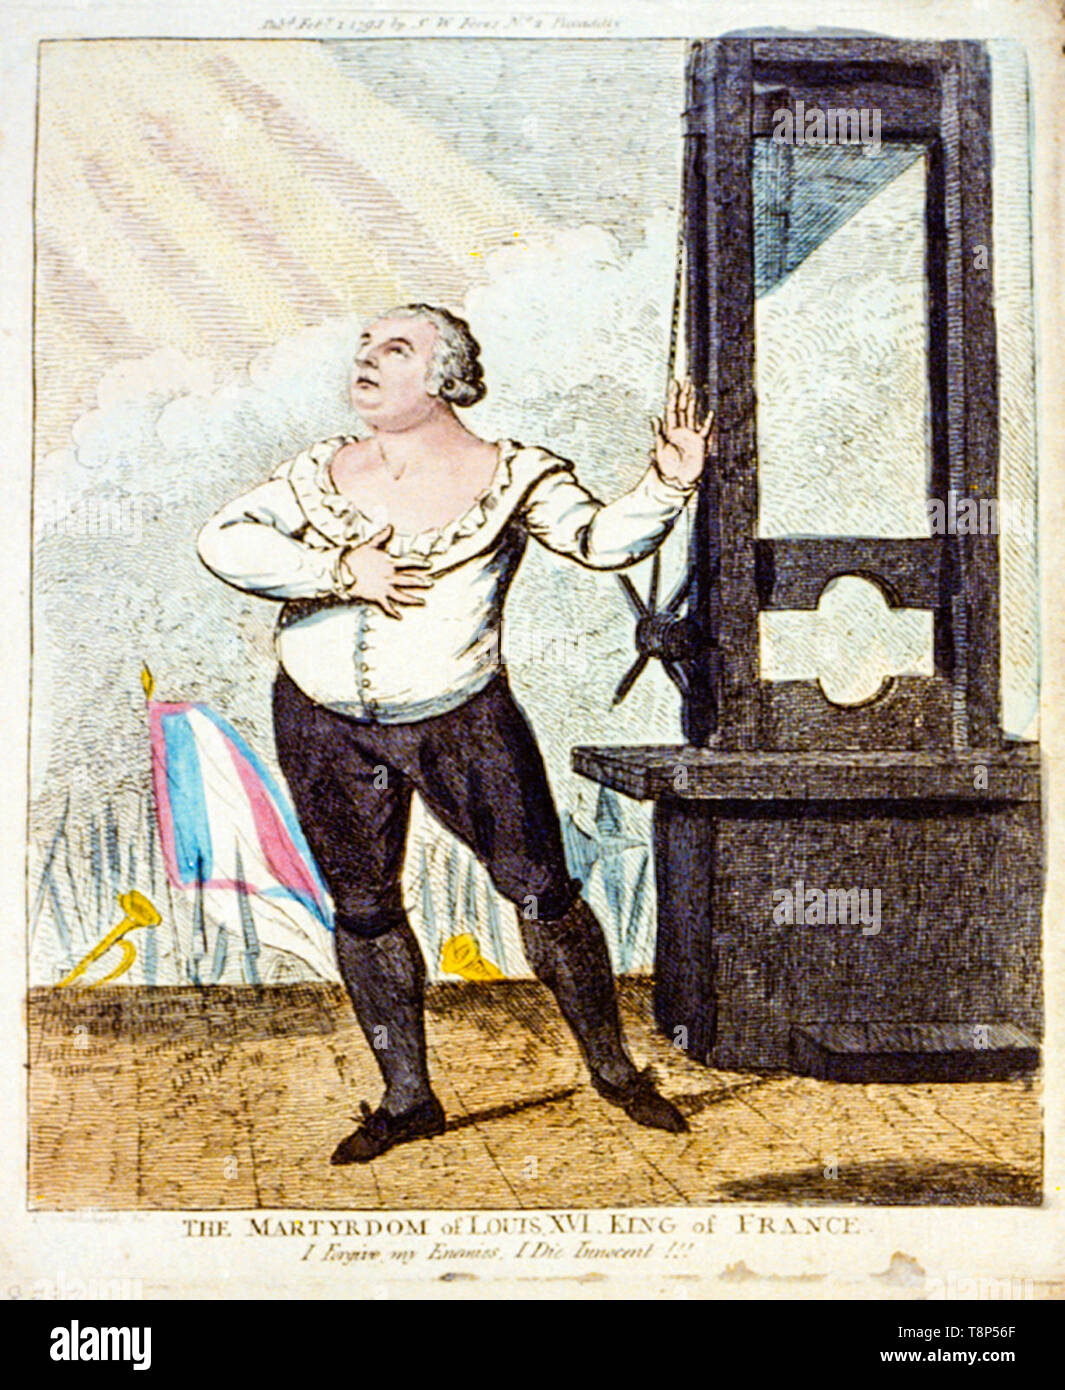 Louis XVI affrontando la morte, in piedi, con un drammatico pongono, accanto a una ghigliottina, lato attacco colorati, incisione, Isaac Cruikshank, 1793 Foto Stock